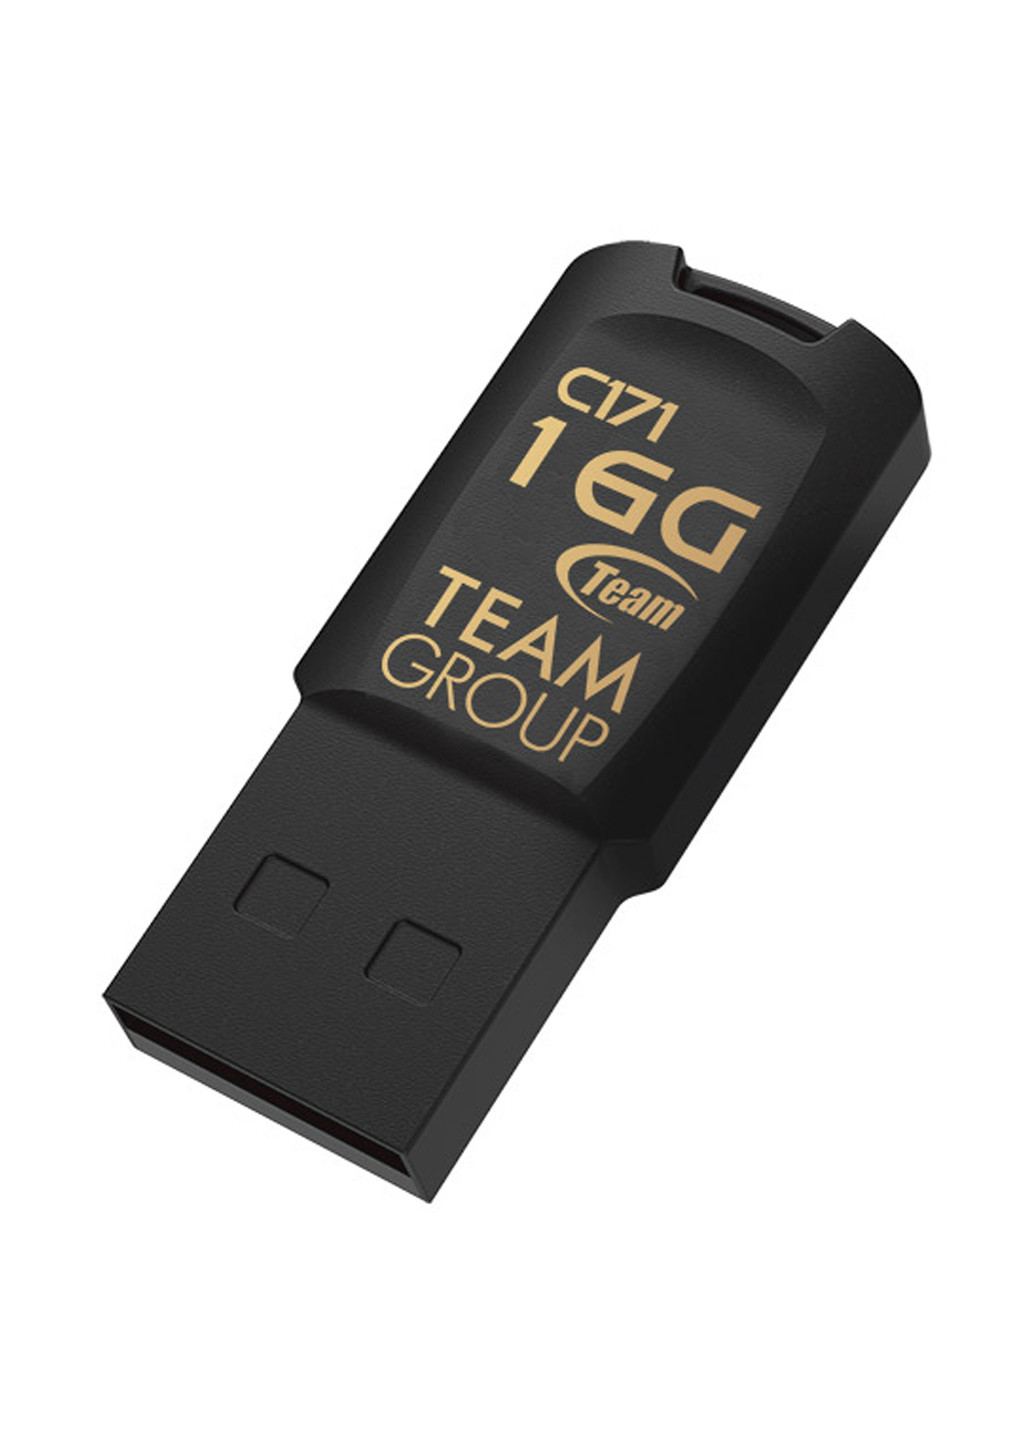 Флеш память USB C171 16GB Black (TC17116GB01) Team флеш память usb team c171 16gb black (tc17116gb01) (134201710)